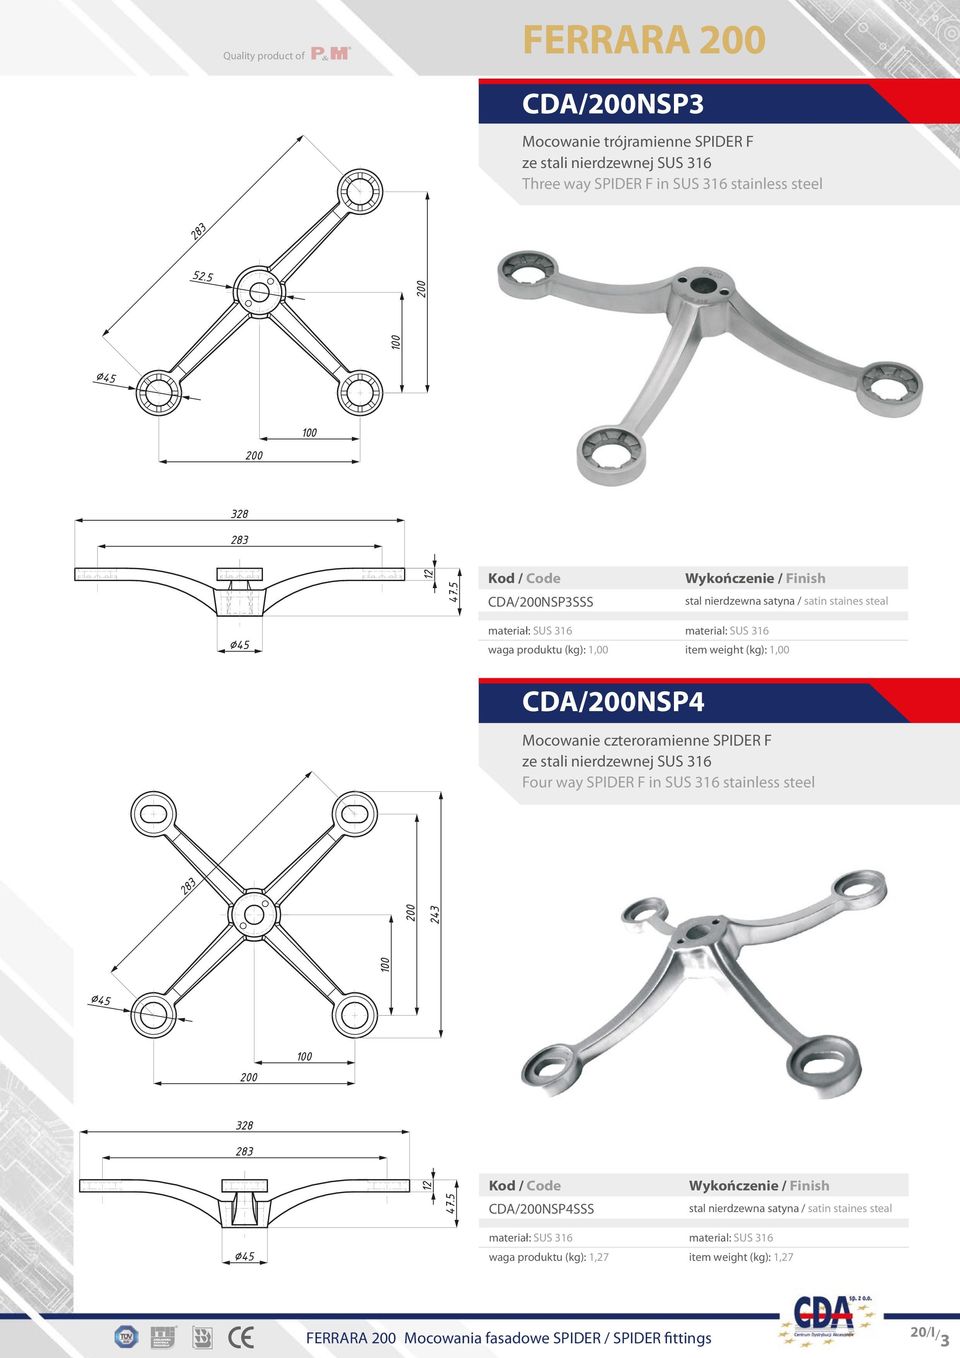 Mocowanie czteroramienne SPIDER F Four way SPIDER F in SUS 316 stainless steel CDA/200NSP4SSS waga produktu (kg):